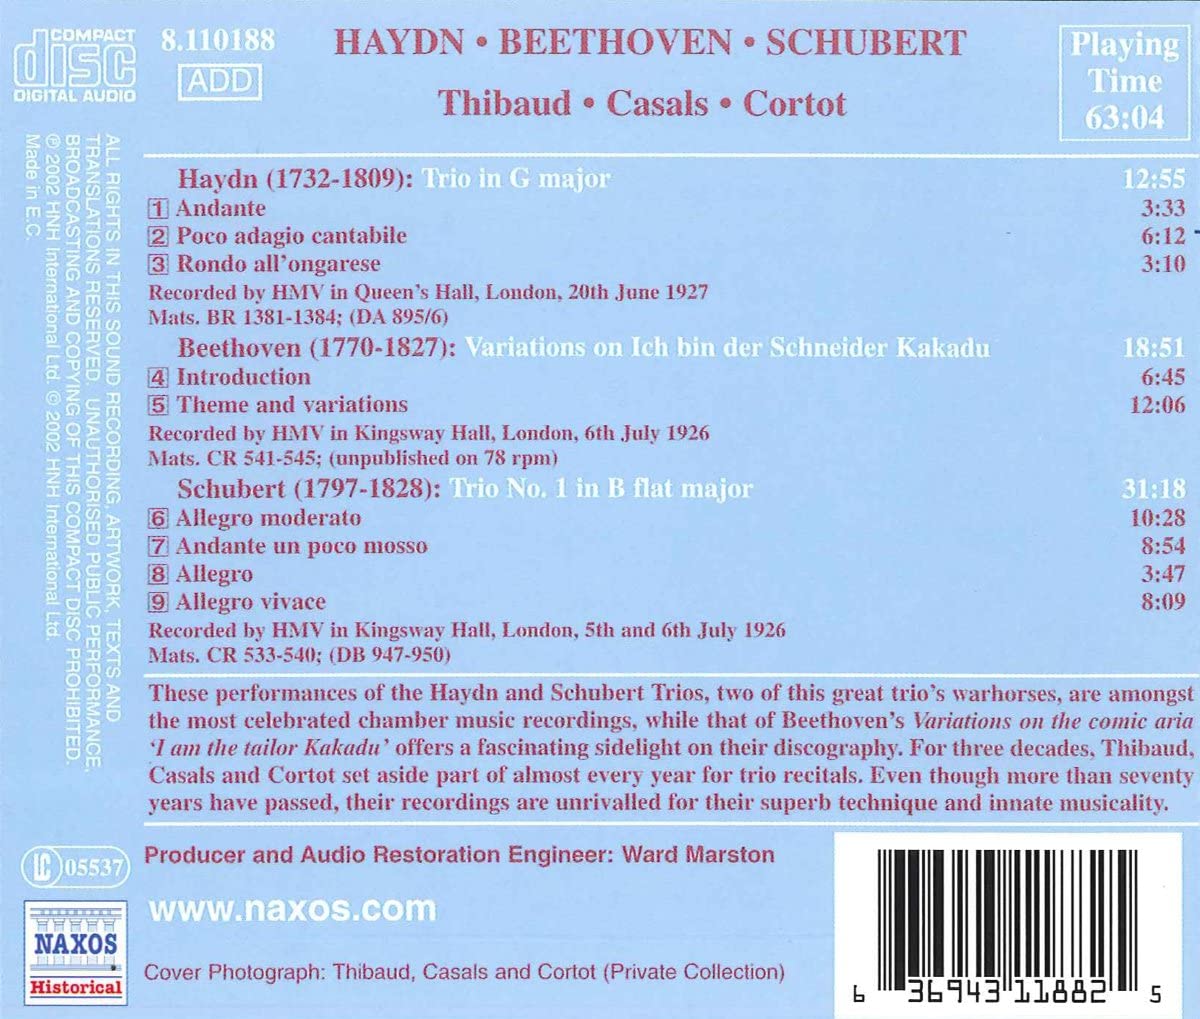 HAYDN / BEETHOVEN / SCHUBERT: Trio, Variatio - slide-1